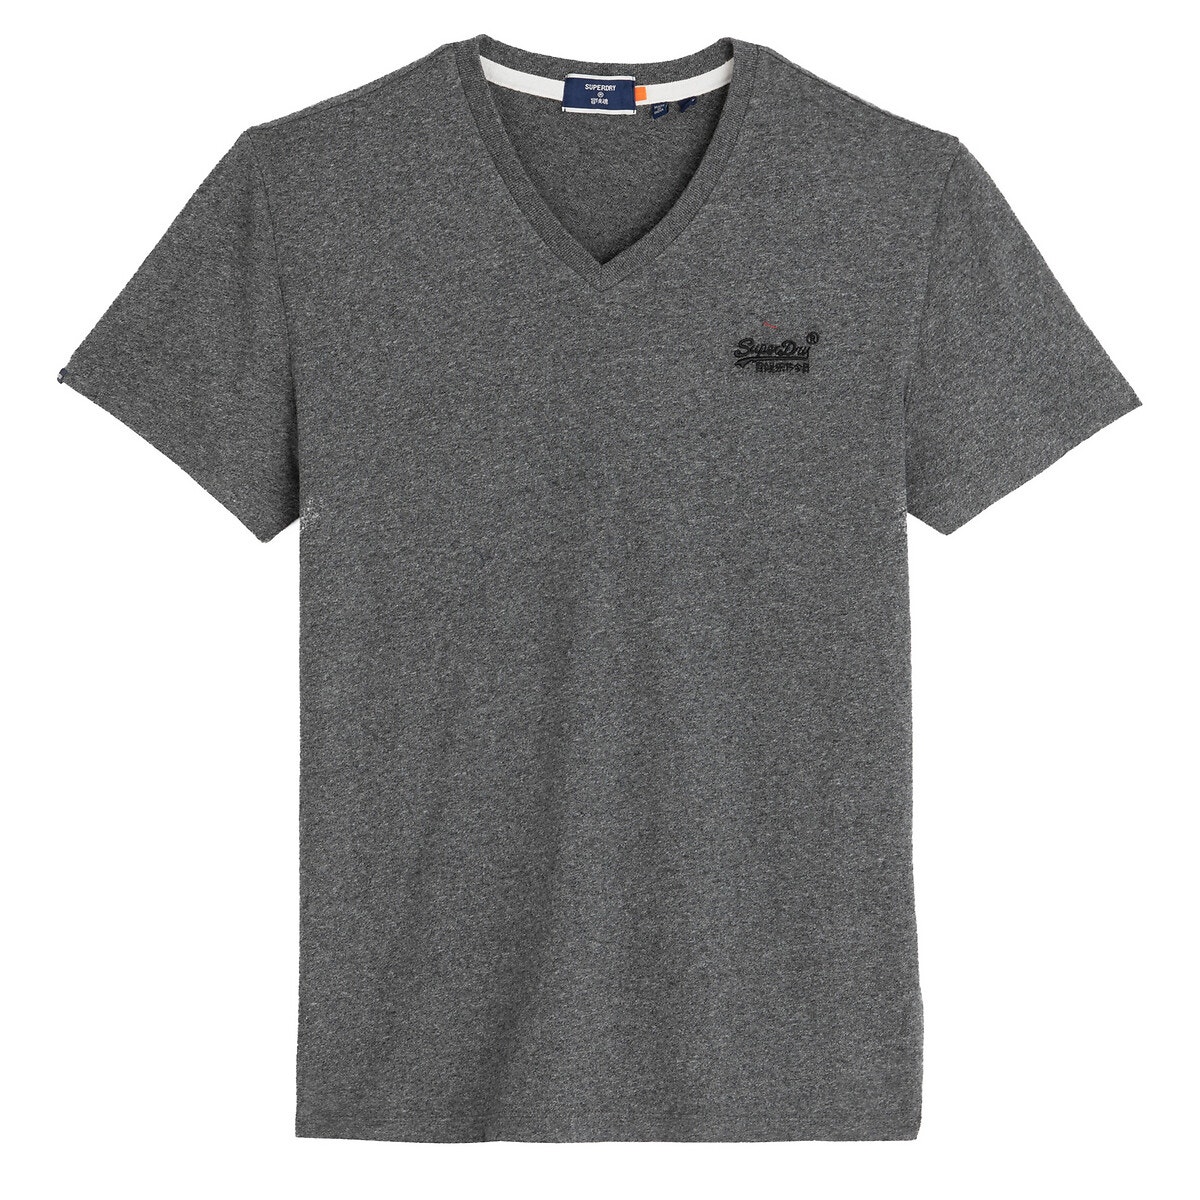 ΑΝΔΡΑΣ | Μπλούζες & Πουκάμισα | T-shirts Κοντομάνικο T-shirt με V, Orange Label Classic